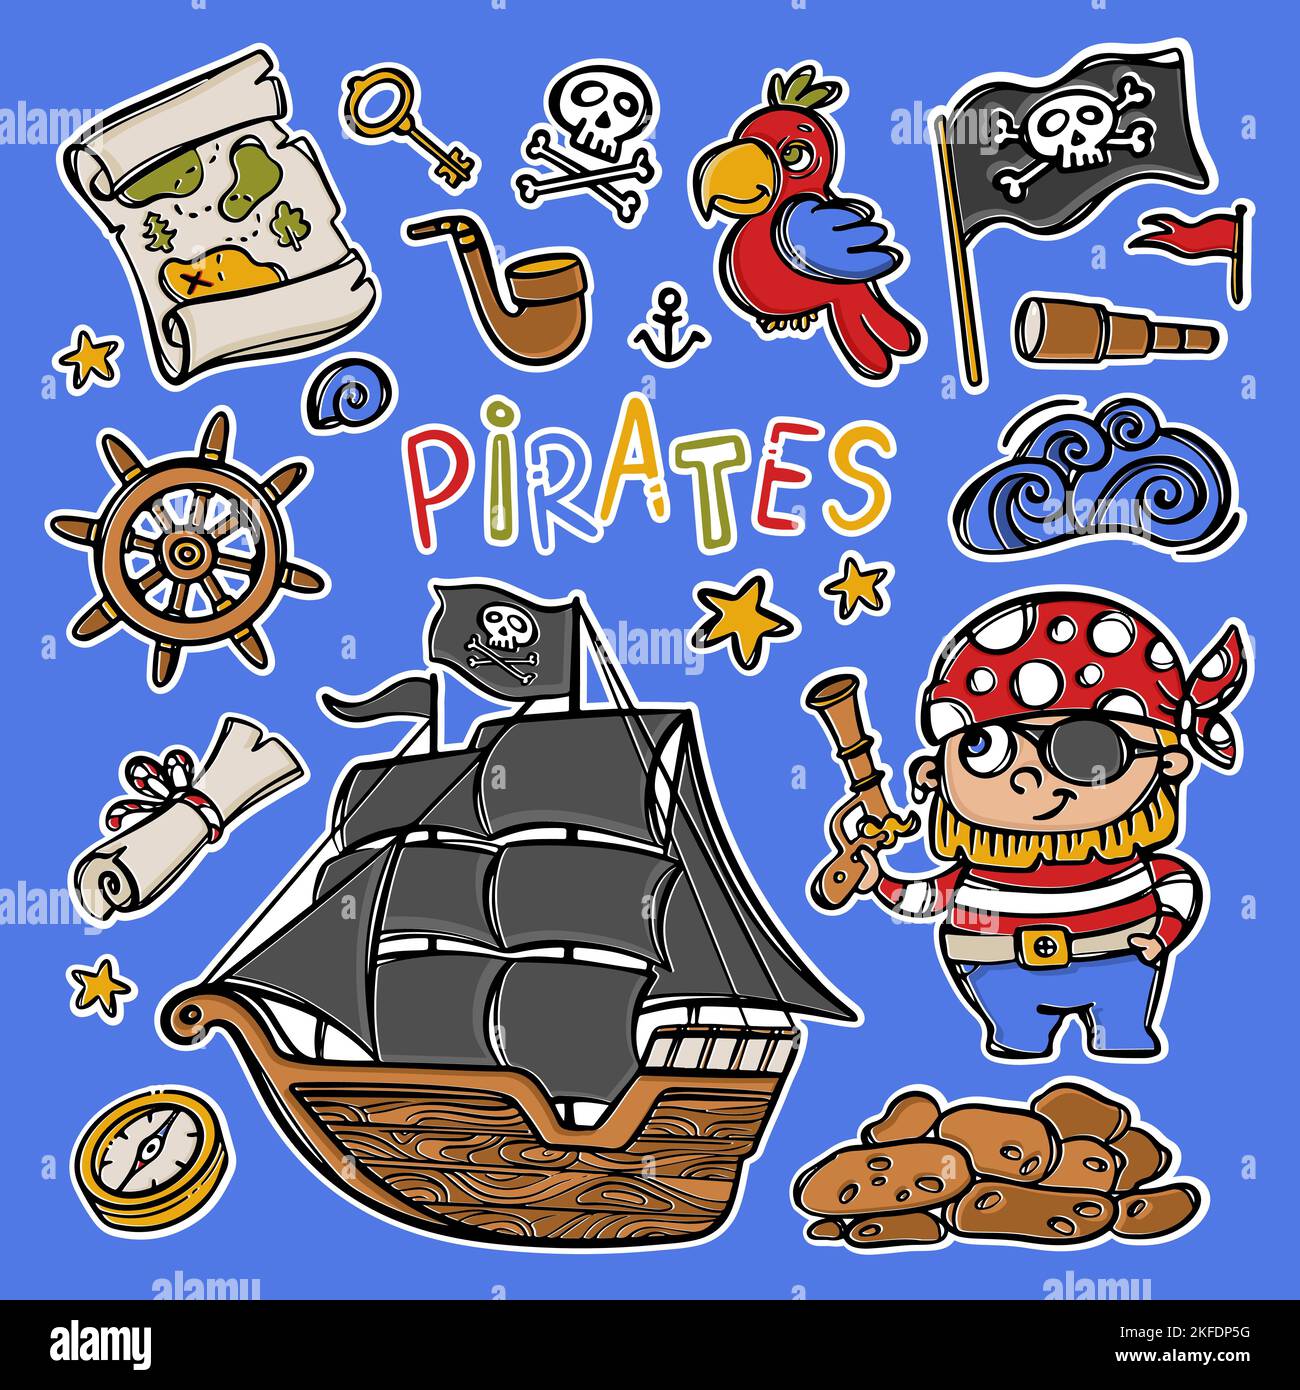 SCHWARZE SEGEL Segelboot mit Totenkopf-Flagge auf Mast Handgezeichnete Cartoon Piraten Aufkleber Clipart Meer Attribute und Objekte Vektor Illustration Set für Design Stock Vektor